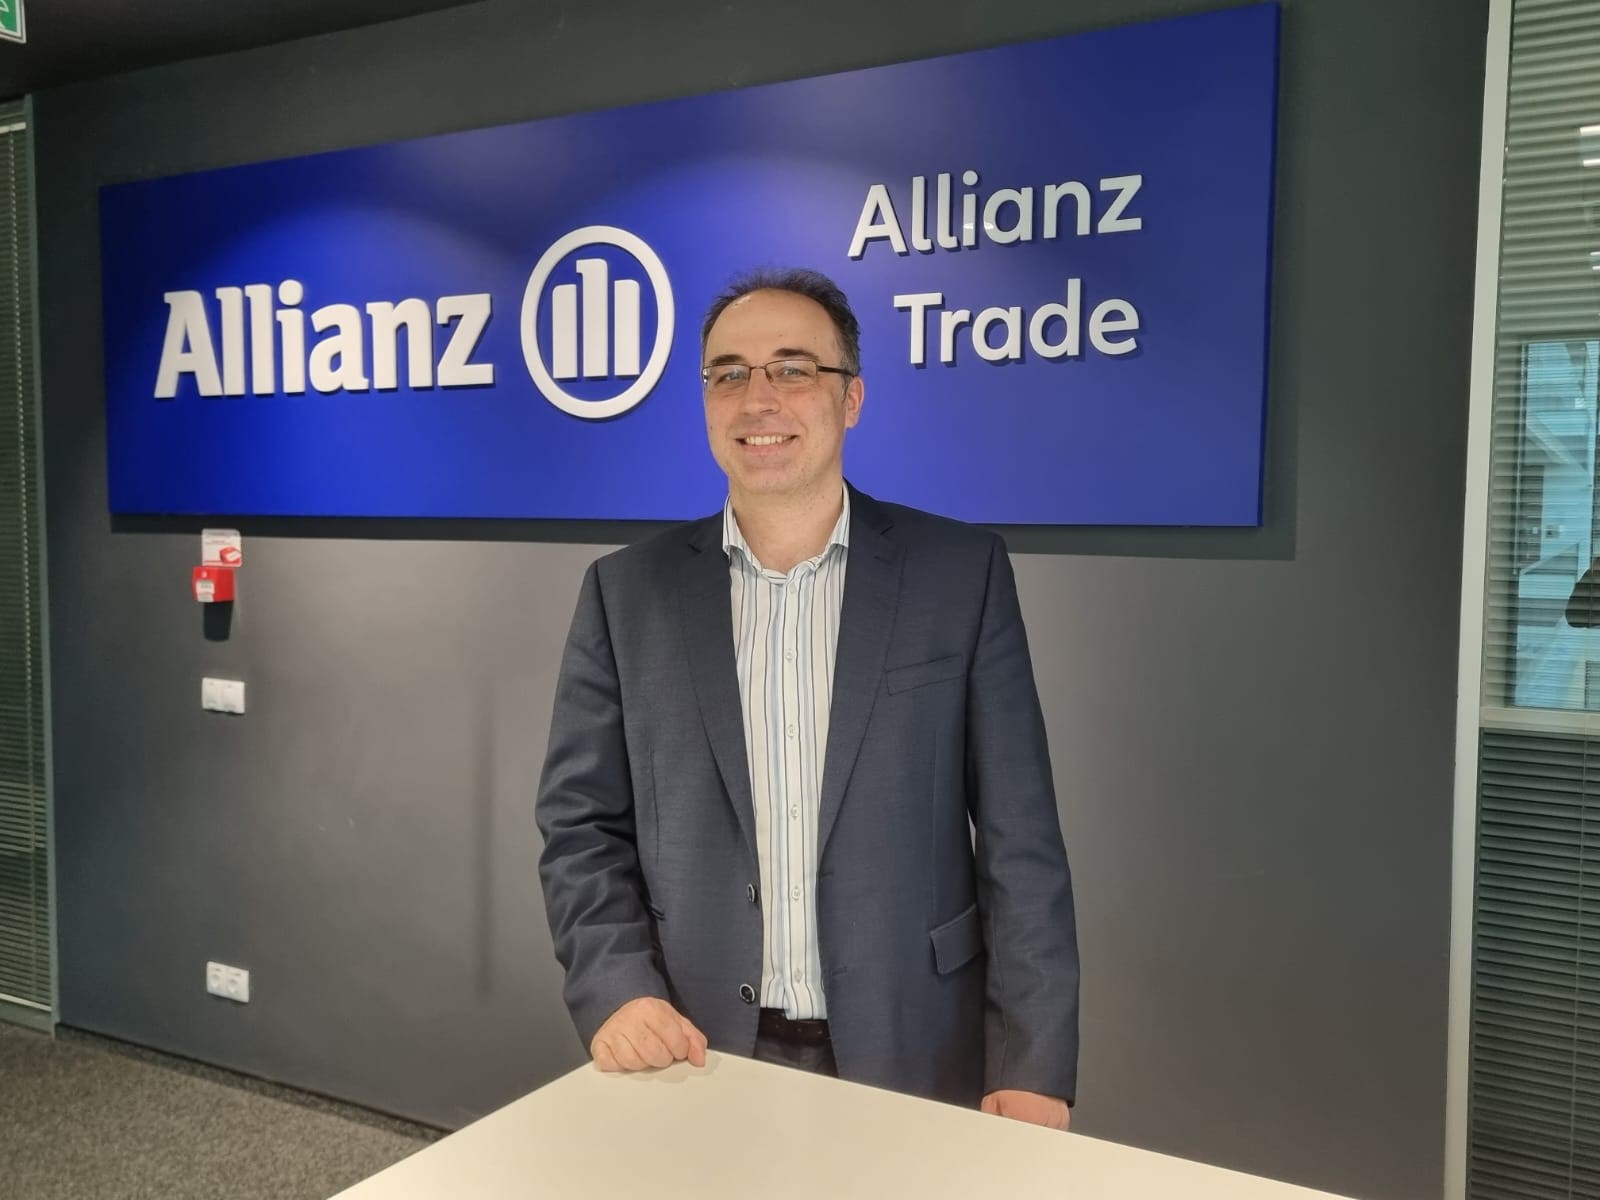 Allianz Trade: Numărul companiilor care intră în insolvenţă creşte într-un ritm accelerat la nivel global, depăşind nivelul antetior pandemiei la firmele cu venituri peste 50 mil.euro, dar în cazul României, după creşteri susţinute de aproximativ 80% în ultimii doi ani, ritmul a încetinit